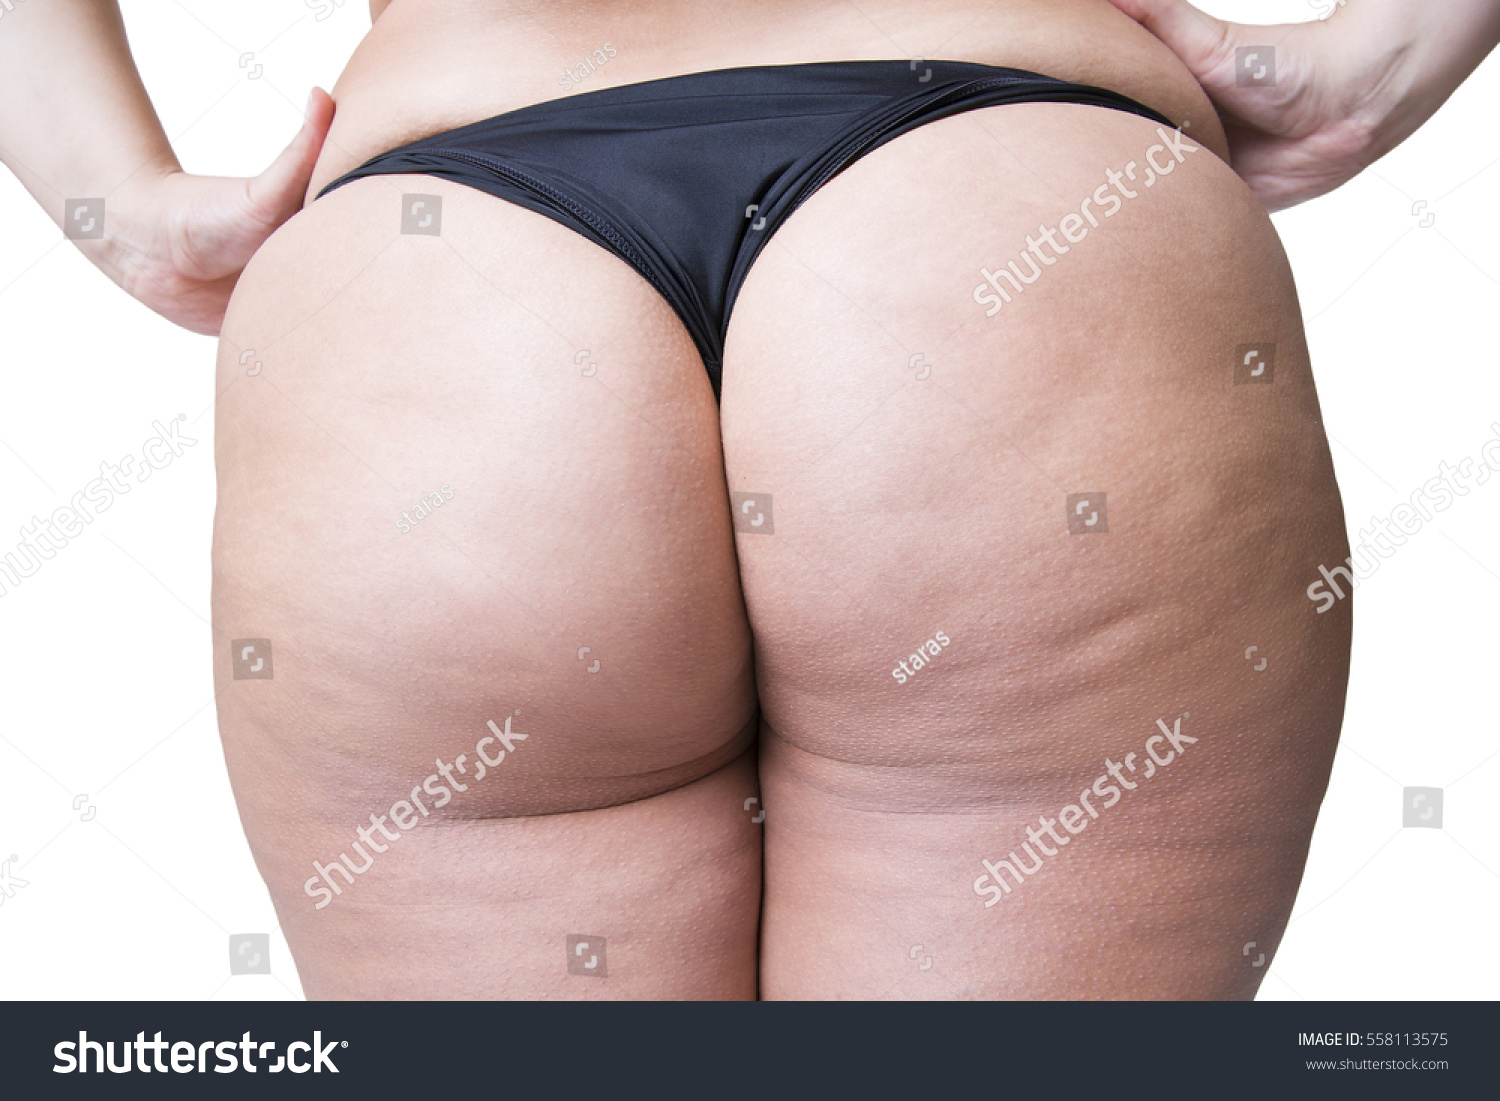 Wet ass fat Pics of